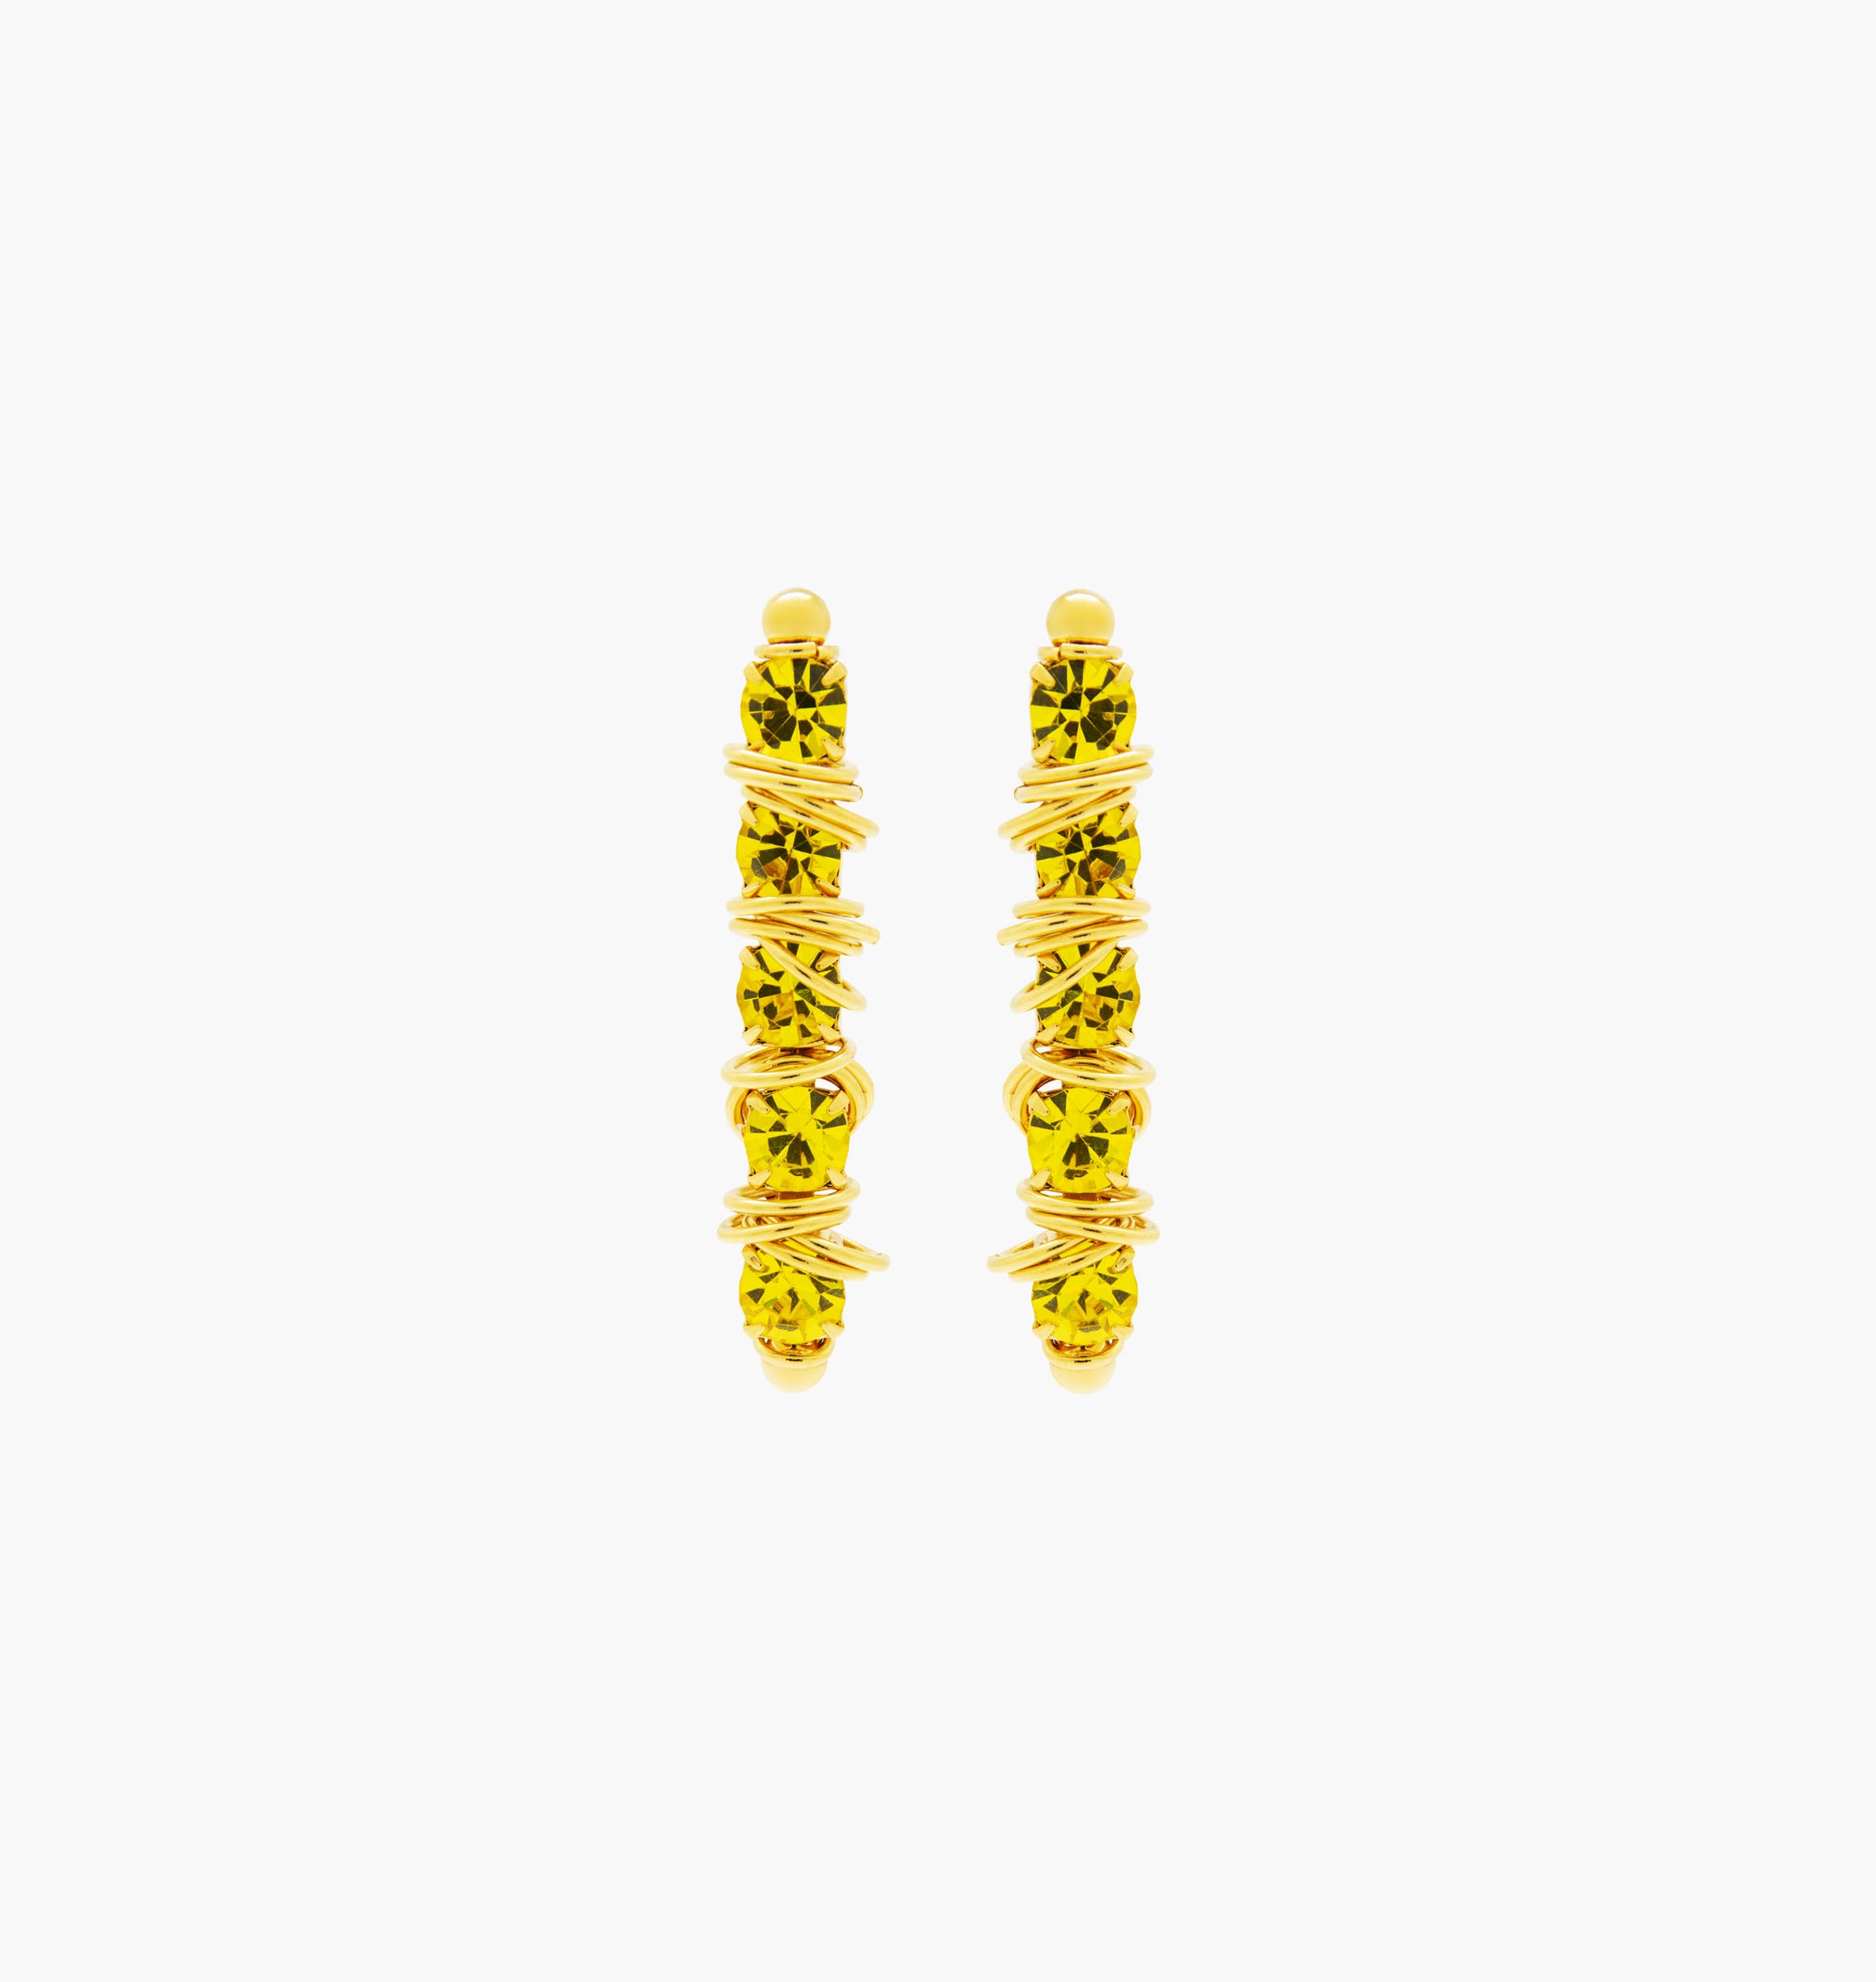 Earrings MINISTARS Citrine - shop.mouttoncollet.com, Nos boucles d'oreilles MINISTARS sont réalisées en bronze dorées à l'or fin, serties de cristaux scintillants coloris citrine et de petits anneaux. Elles seront assez discrètes pour être associées à vos tenues du quotidien, cristal jaune bijou, swarovski, bijou createur, fabrique en france, belgique, italie, belgian designers, creer a paris, moutton collet,